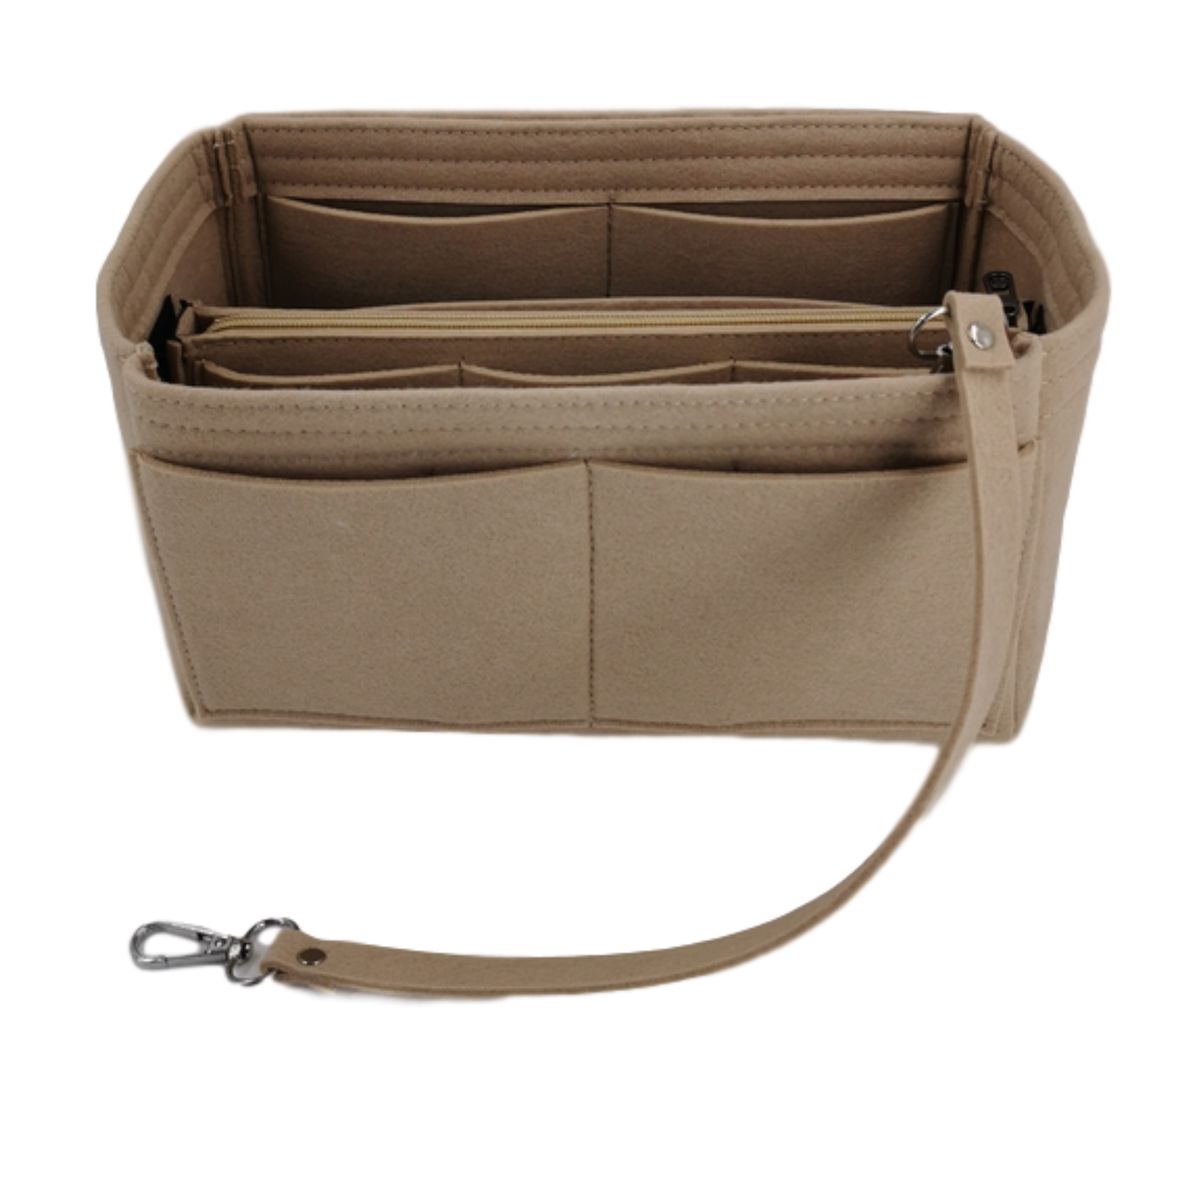 Handbag Organiser Insert, Tote Bag Shaper with Zipper, 2 Sizes | Buy ...